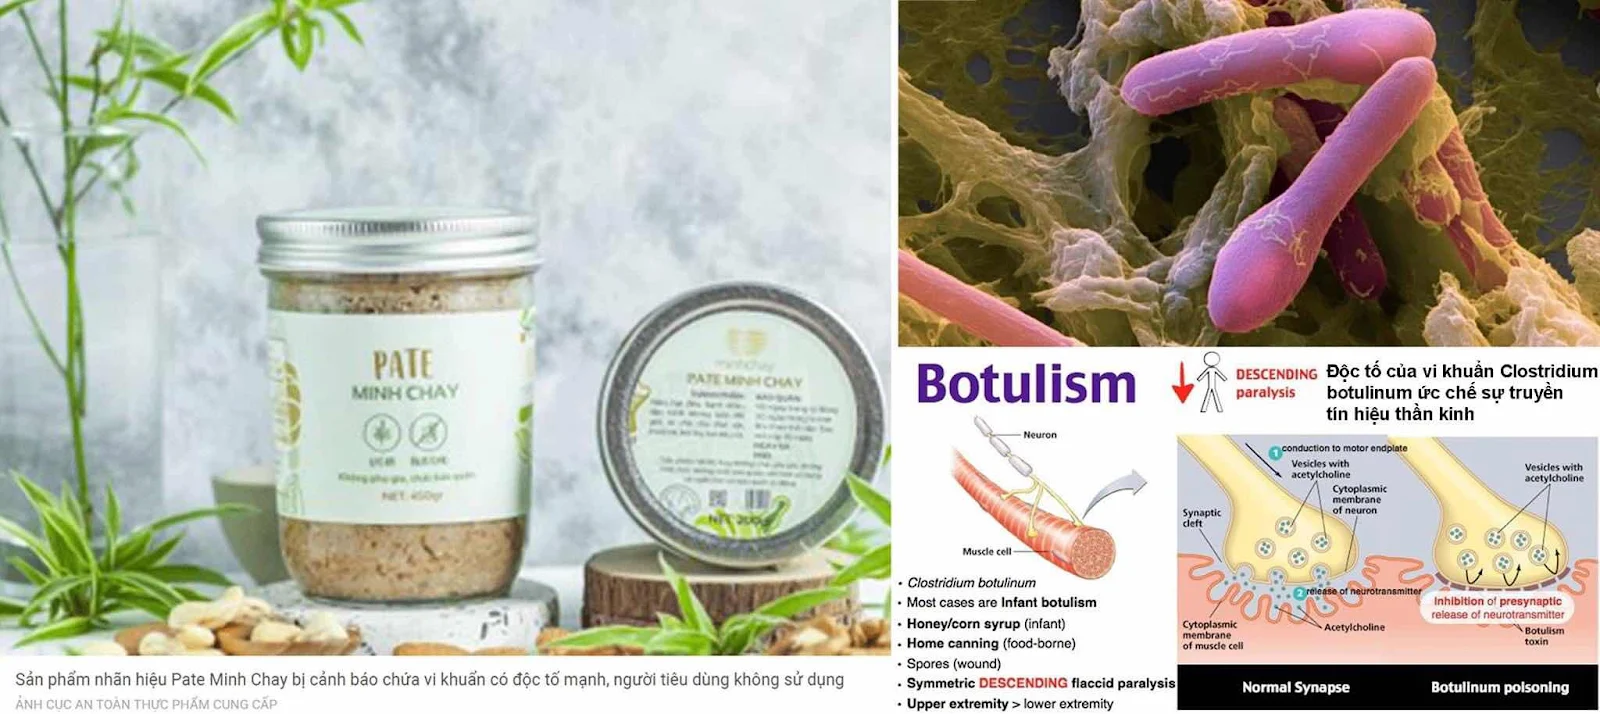 Ngộ độc thực phẩm do vi khuẩn Clostridium botulinum